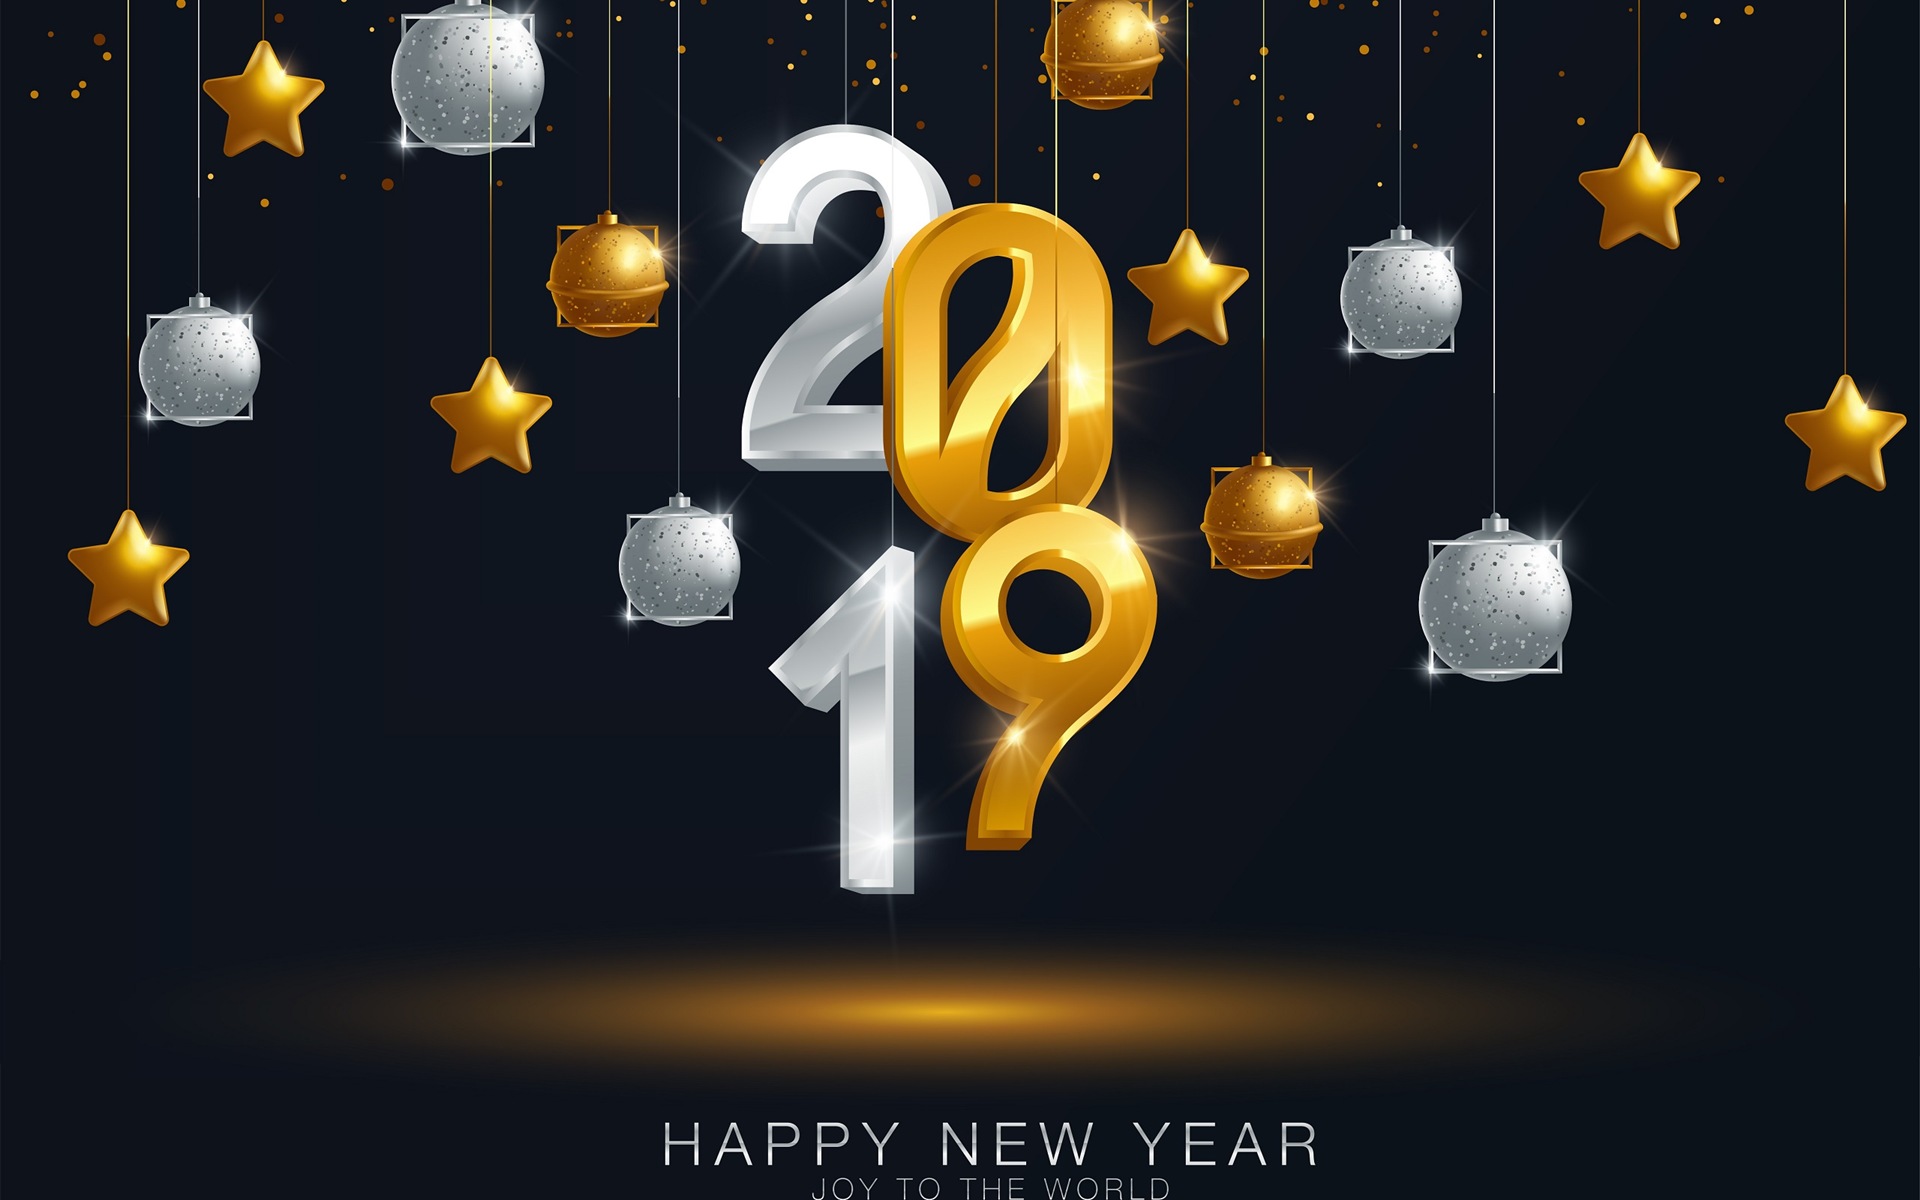 Feliz año nuevo 2019 HD wallpapers #12 - 1920x1200